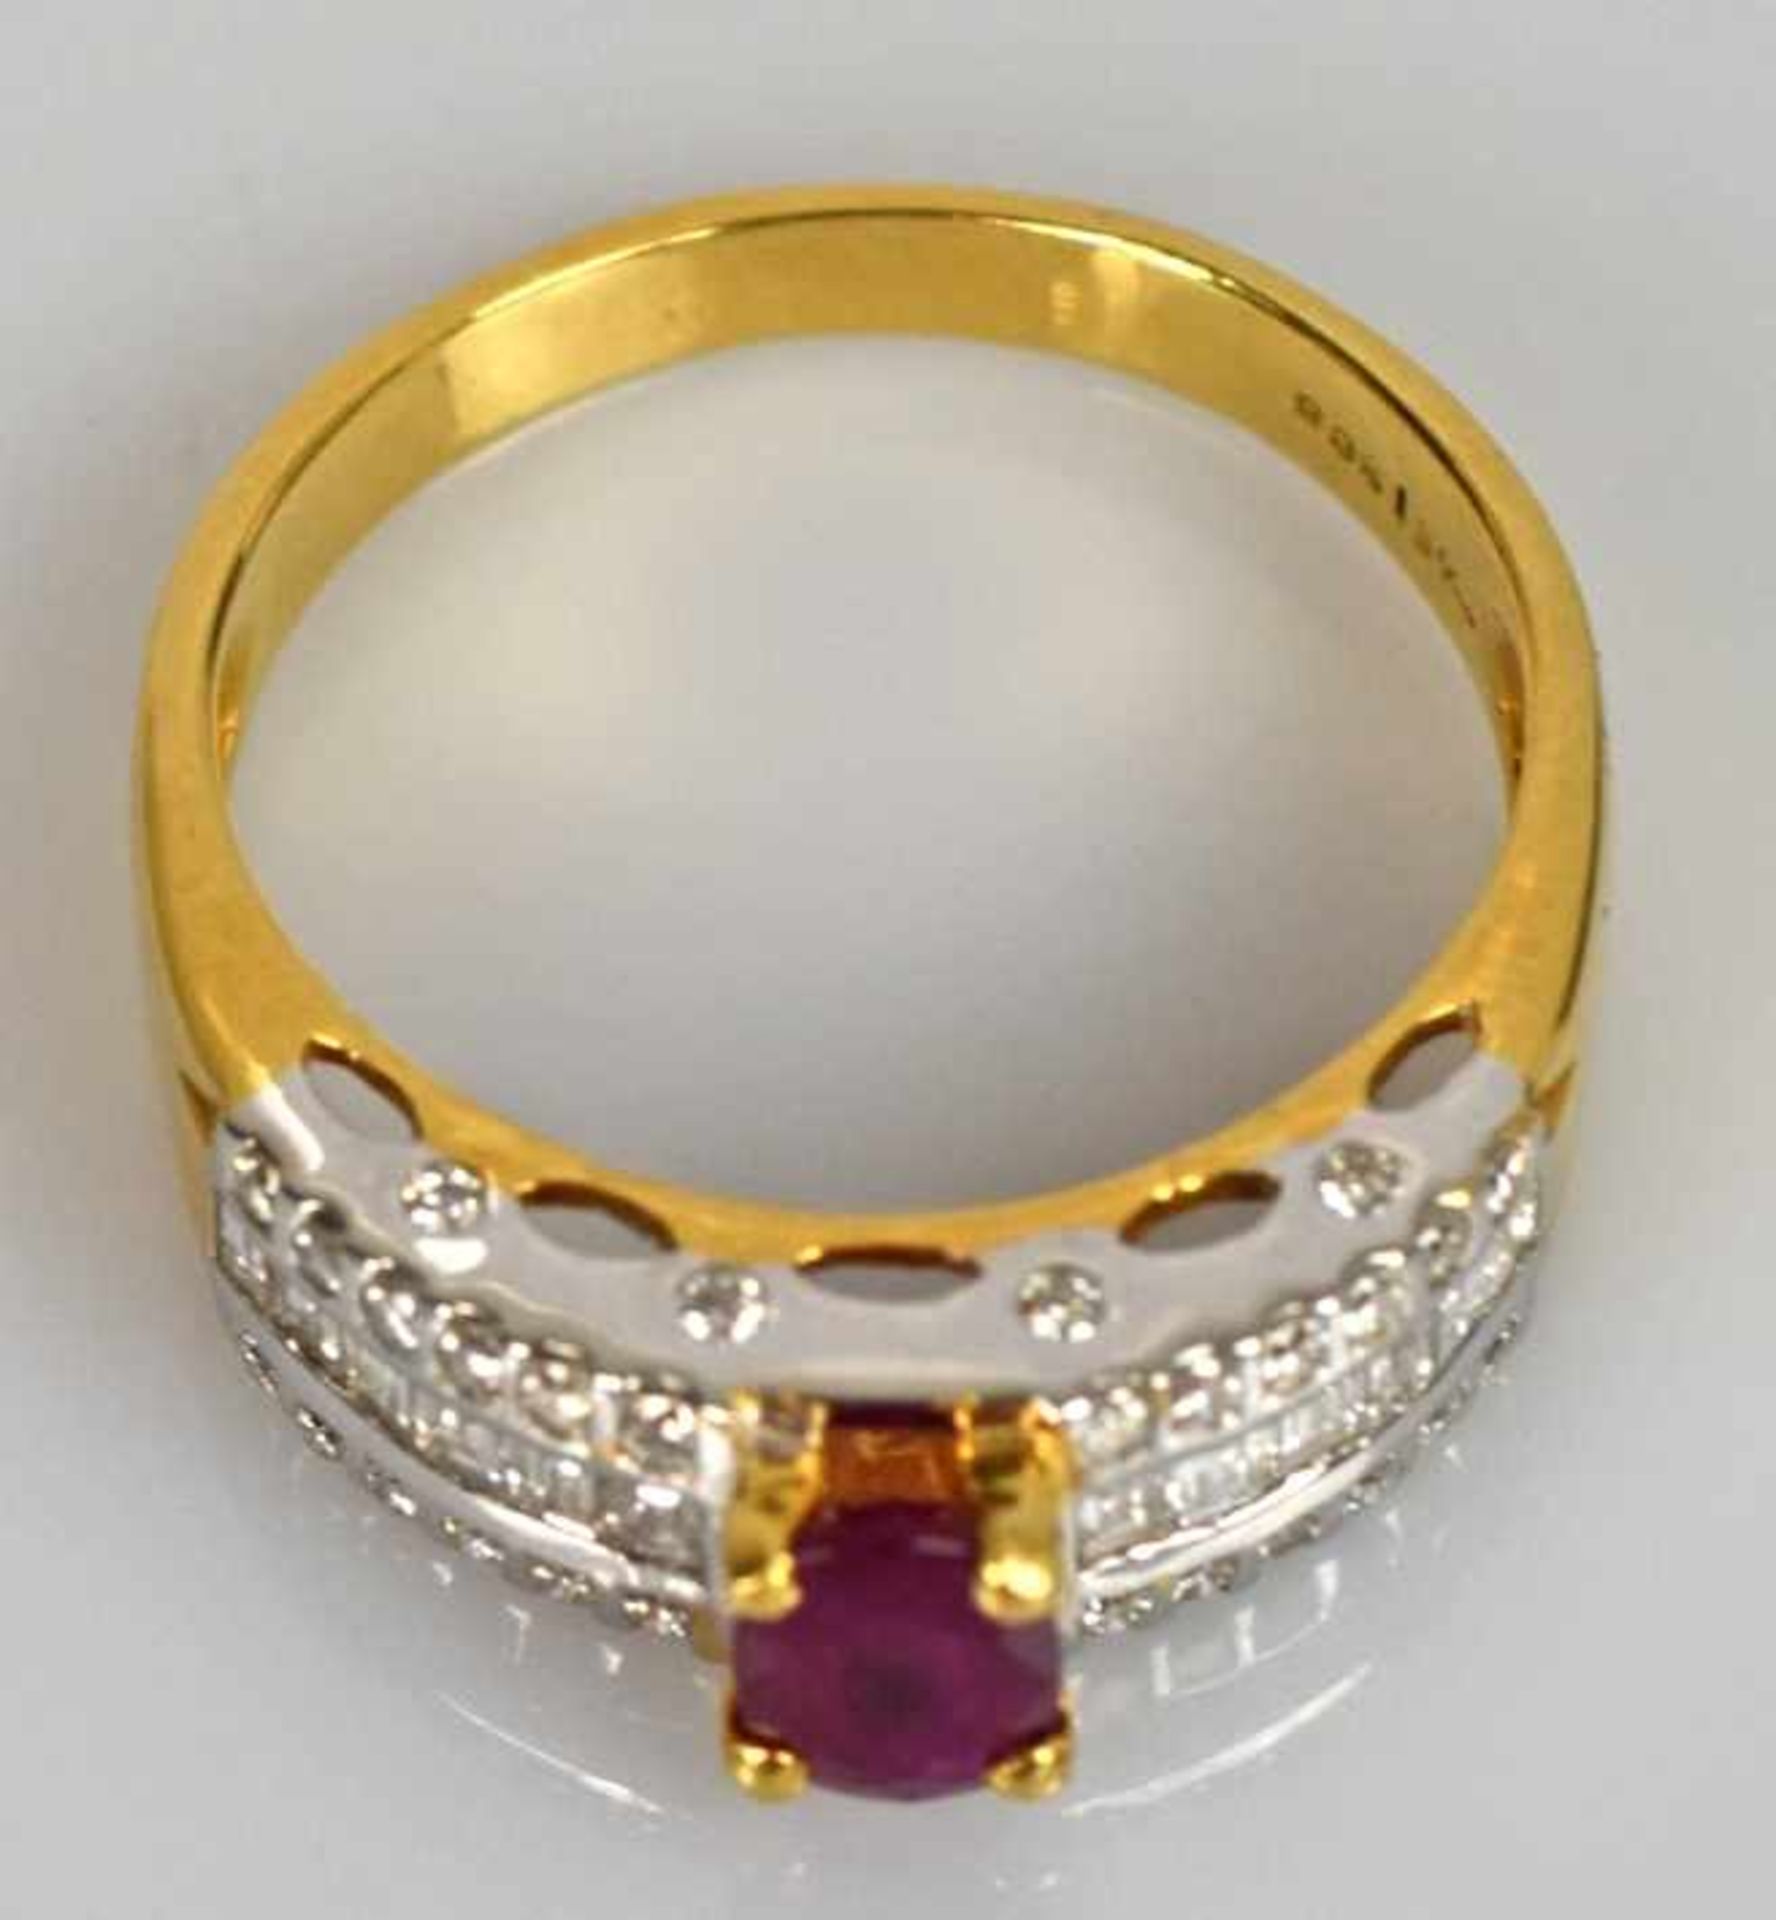 RUBINRING ovaler Rubin mit schöner Farbe 7x5mm, die Schultern besetzt mit je 6 Diamantvierecken, - Bild 4 aus 4